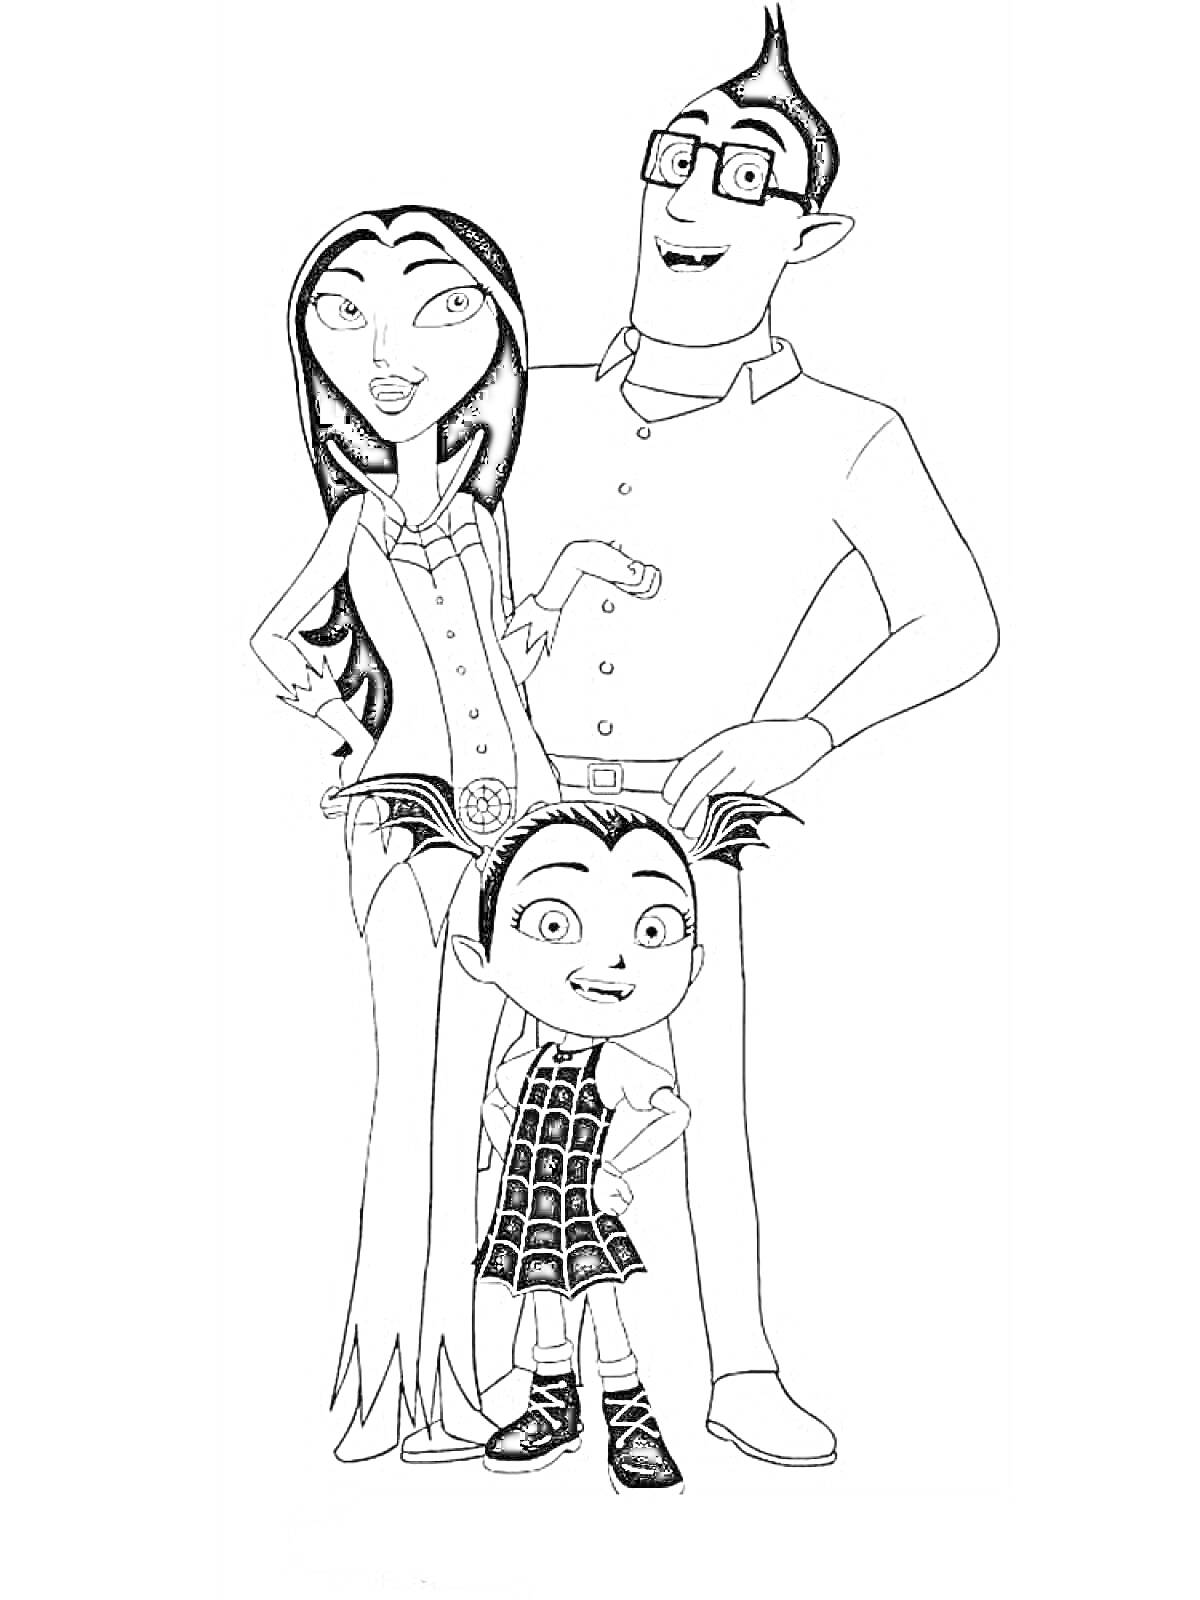 Семья с Вампириной (однороговая девочка в сетчатом платье, женщина с длинными волосами в юбке, мужчина в очках и рубашке)